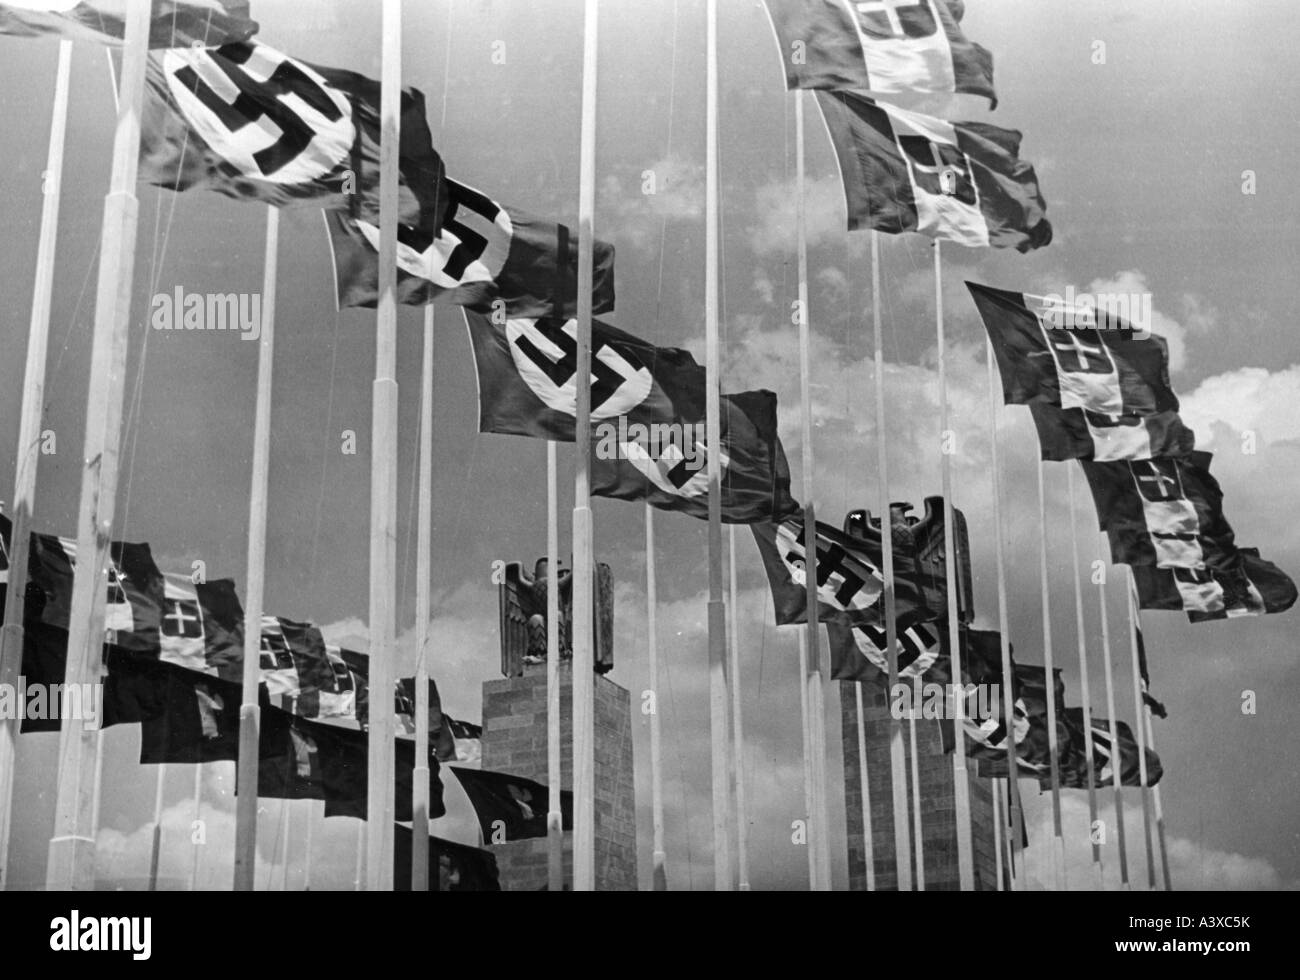 Geografia/viaggio, Italia, politica, bandiere italiane e tedesche, durante la visita di Adolf Hitler a Roma, 3.5.1938 - 9.5.1938, Foto Stock